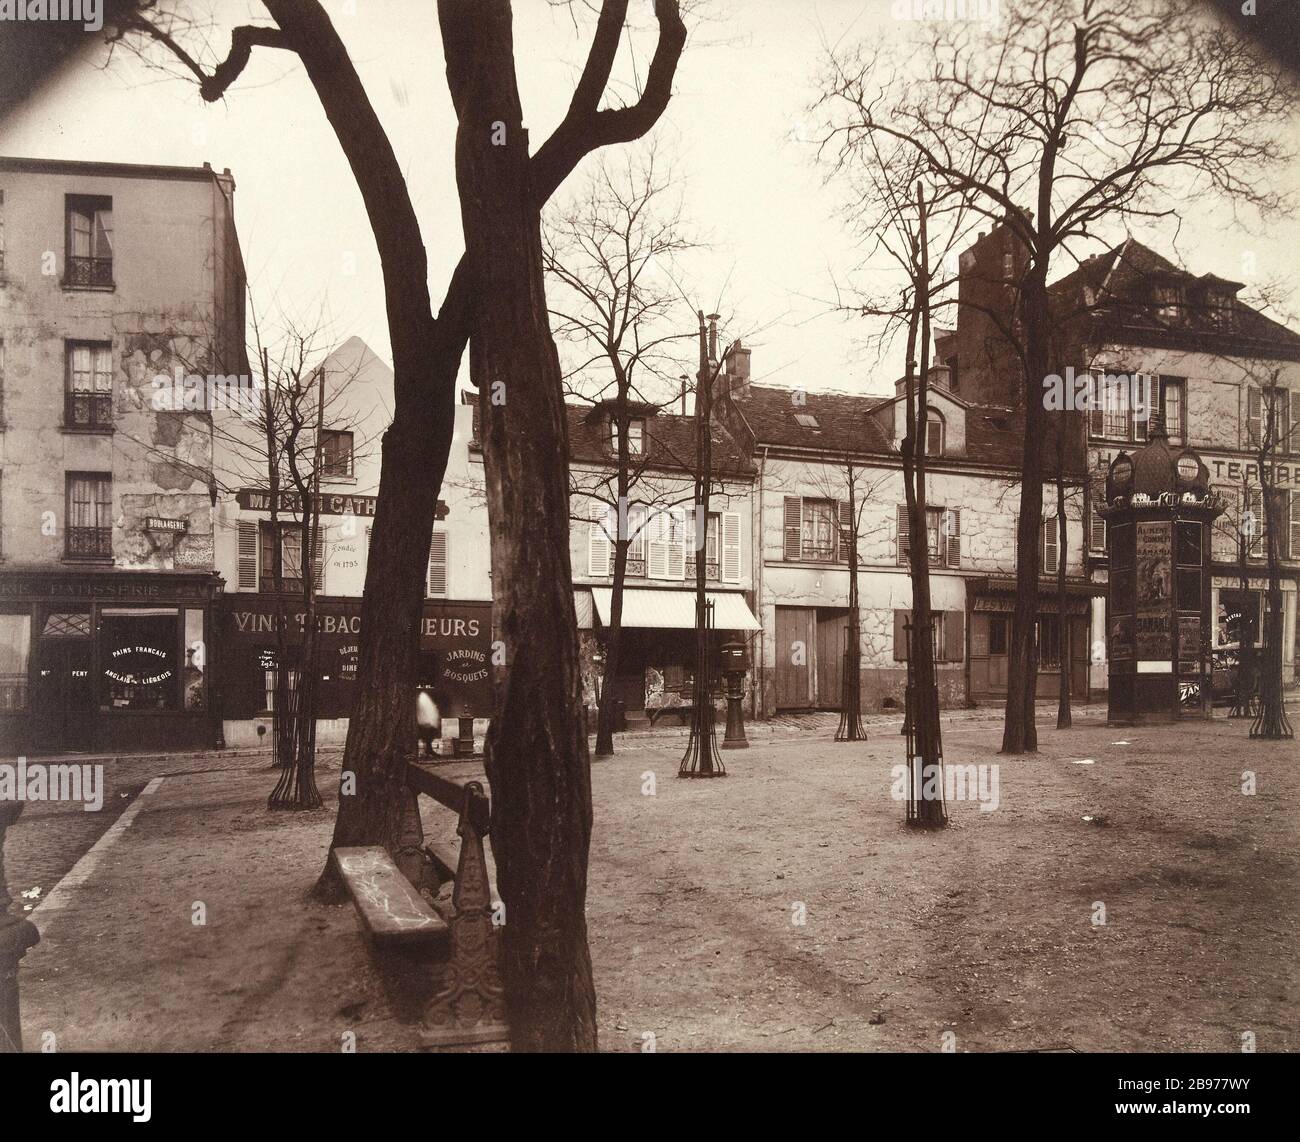 PLACE DU TERTRE, MONTMARTRE, 18. BEZIRK, PARIS Place du Tertre, Montmartre. Paris (XVIIIème arr.), mars 1922. Photographie d''Eugène Atget (1857-1927). Paris, musée Carnavalet. Stockfoto